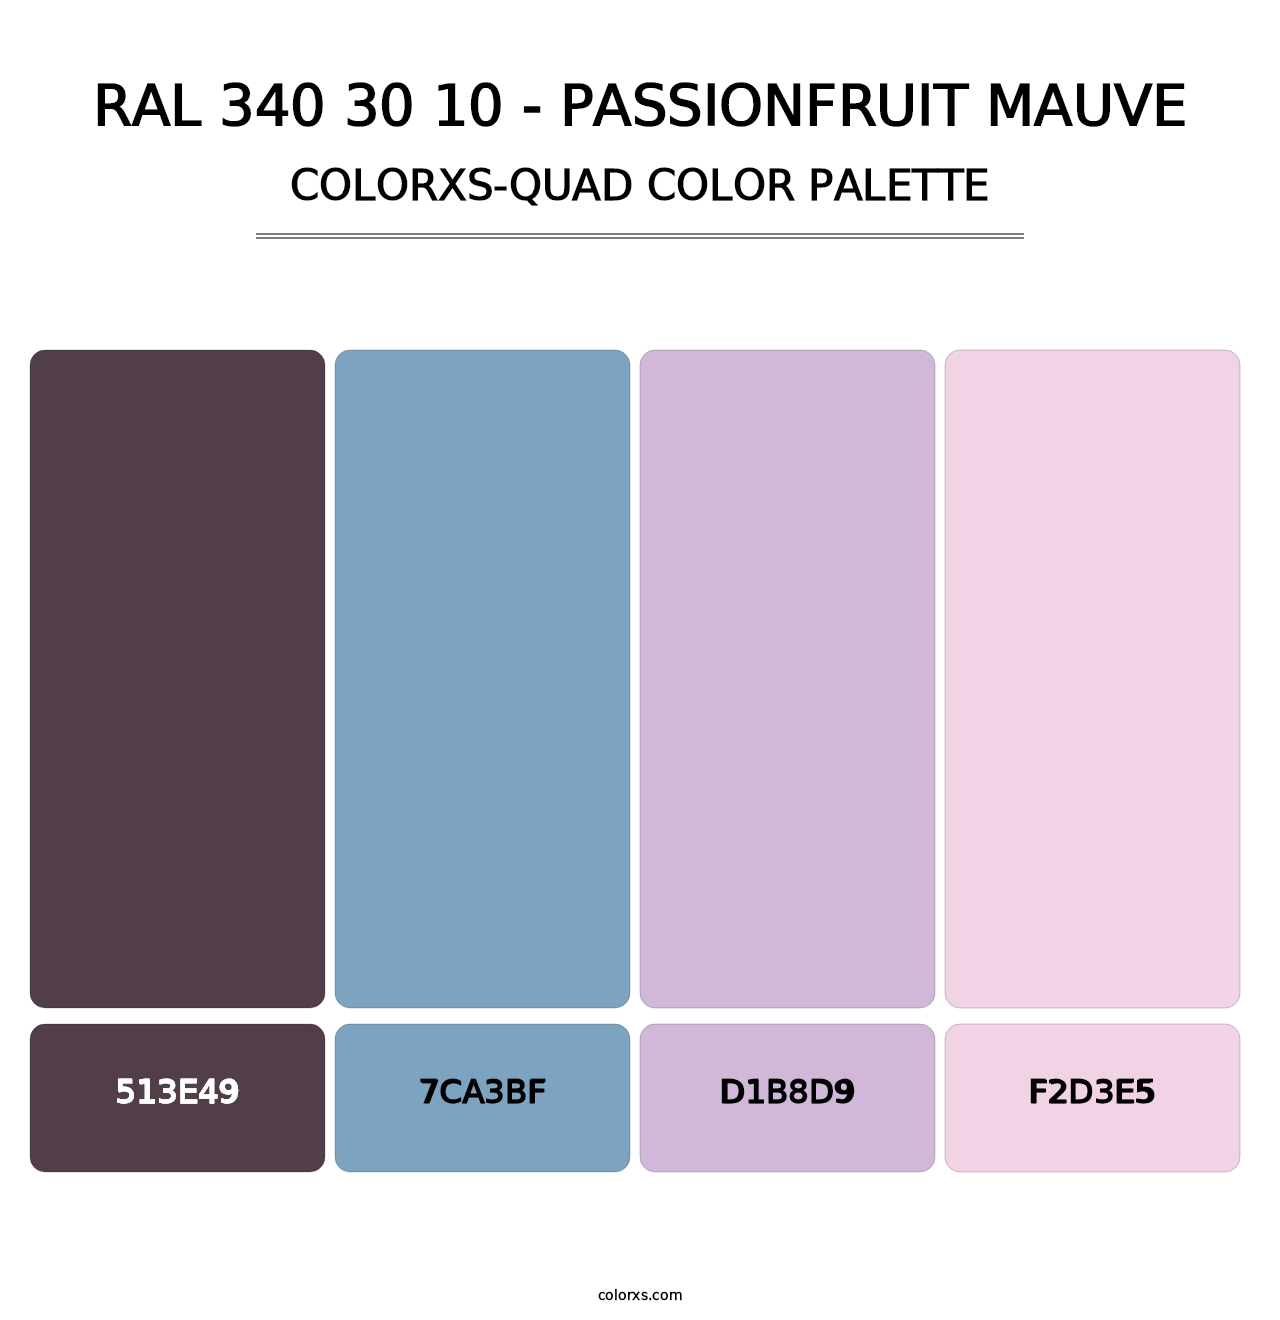 RAL 340 30 10 - Passionfruit Mauve - Colorxs Quad Palette